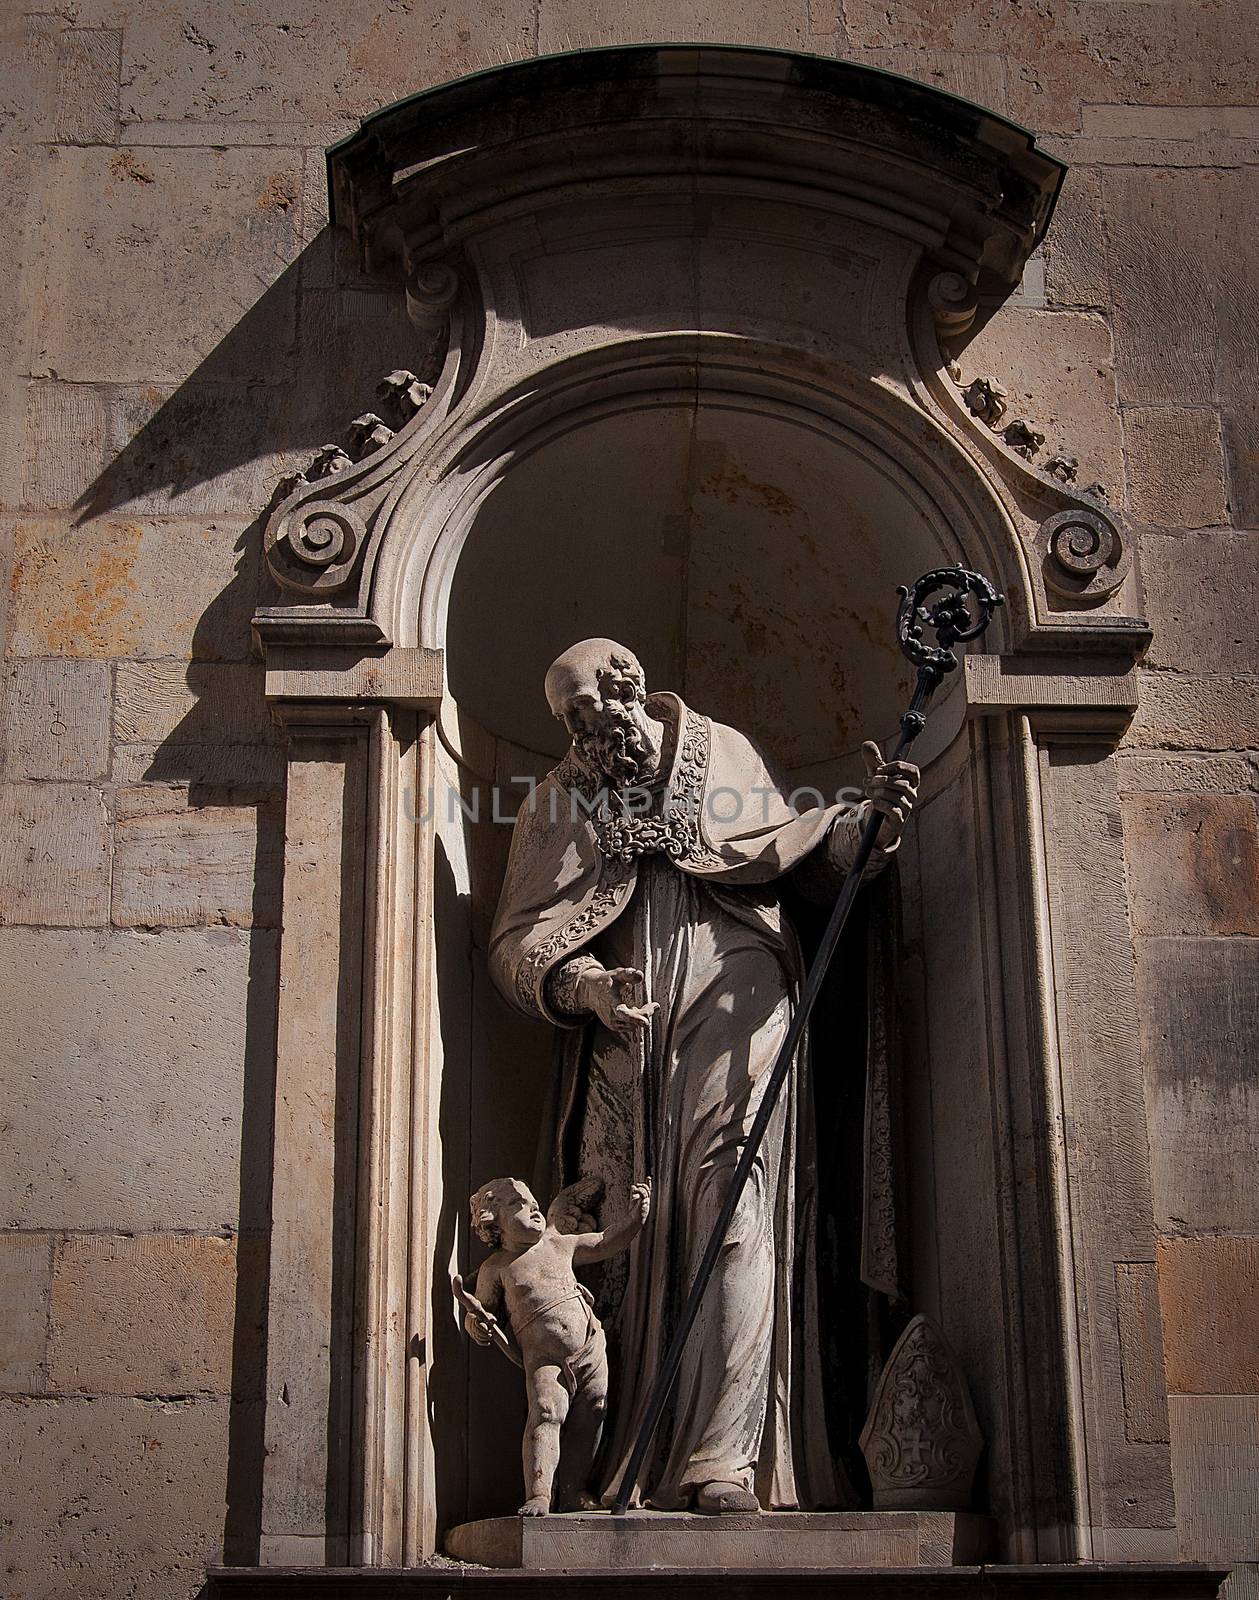 Dresden, Germany, Statue in Zwinger. by sfinks